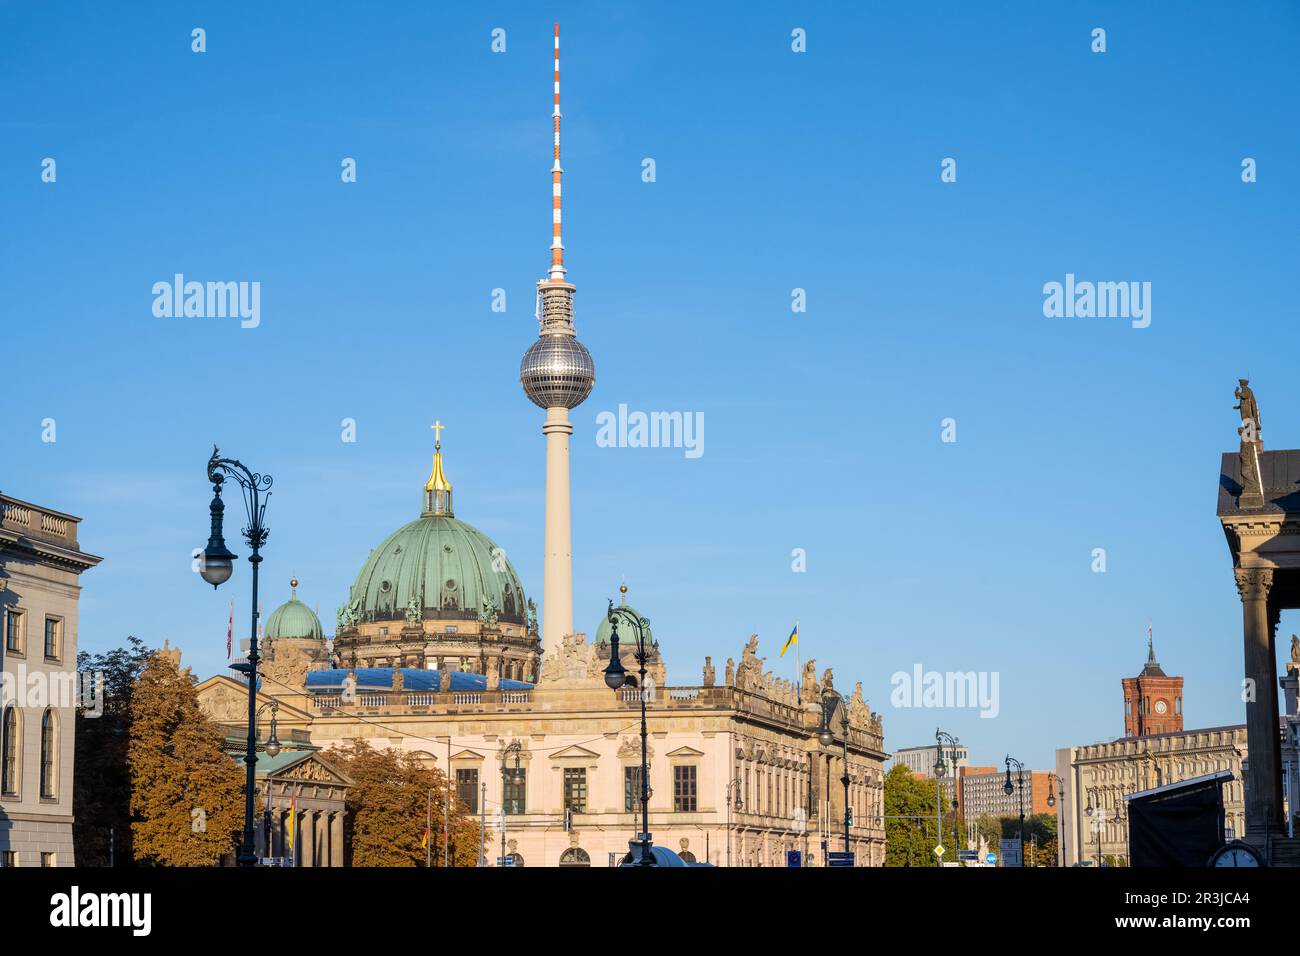 La famosa torre della televisione e alcuni edifici storici del viale Unter den Linden a Berlino, in Germania Foto Stock